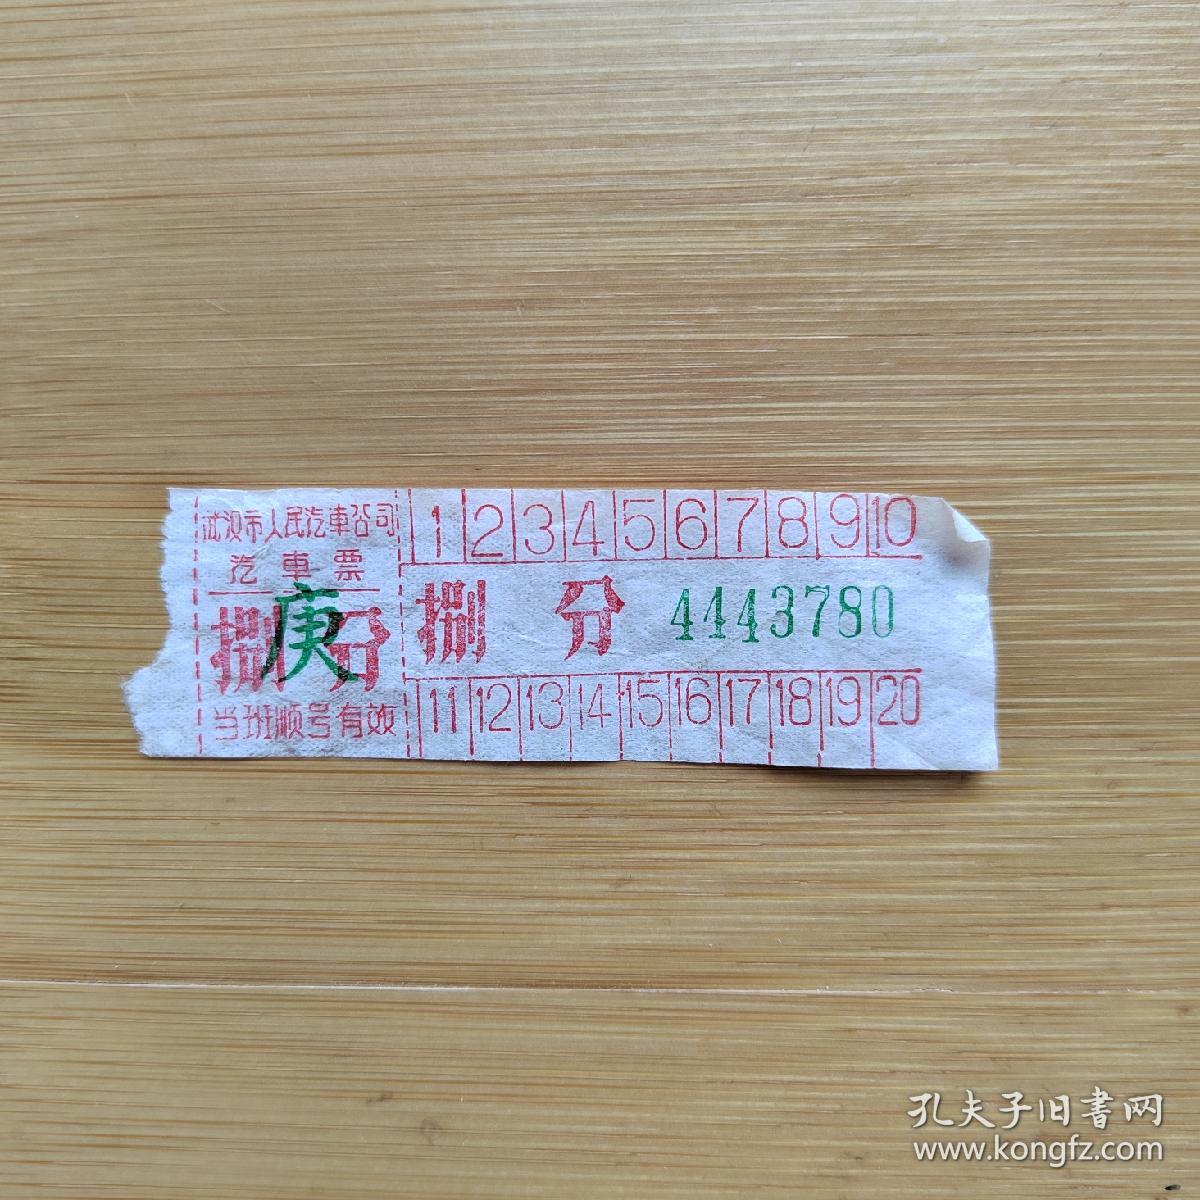 【寻迹往昔】交通票据 早期武汉公交车票 「原版」如图